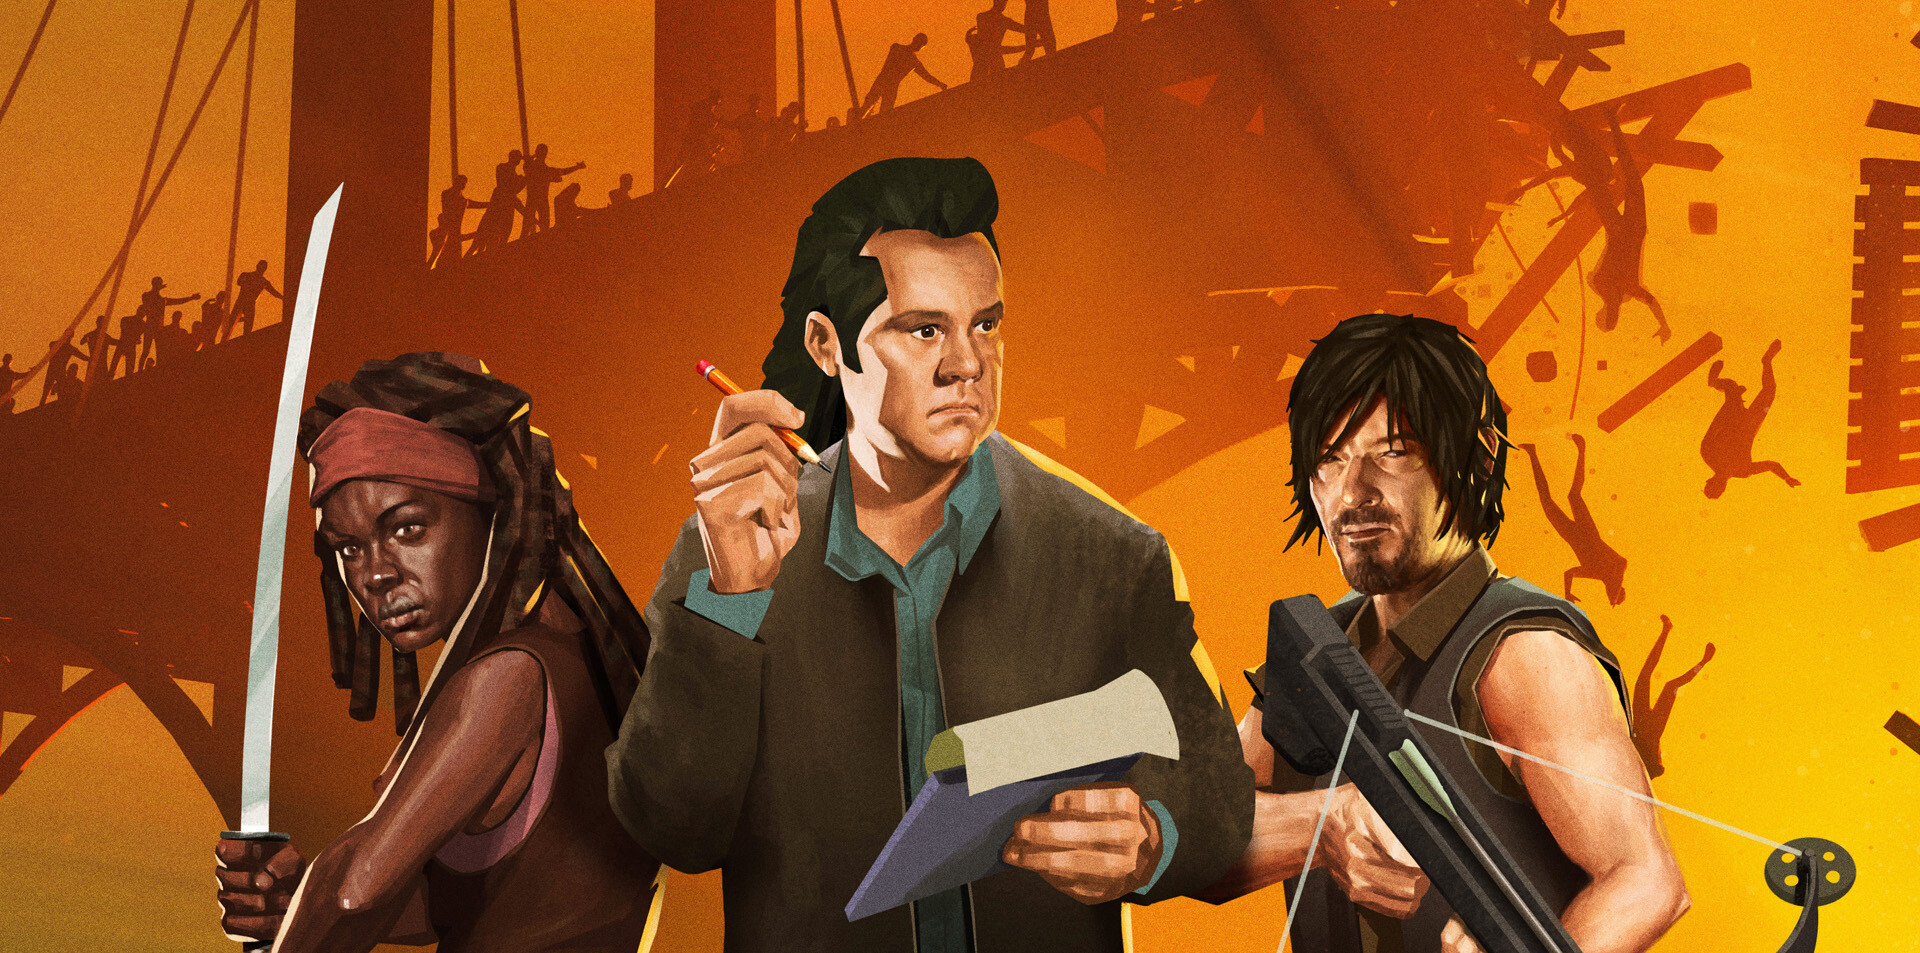 Bridge Constructor: The Walking Dead y Ironcast son los juegos gratis de Epic Games Store hasta julio 15 (2021) juego